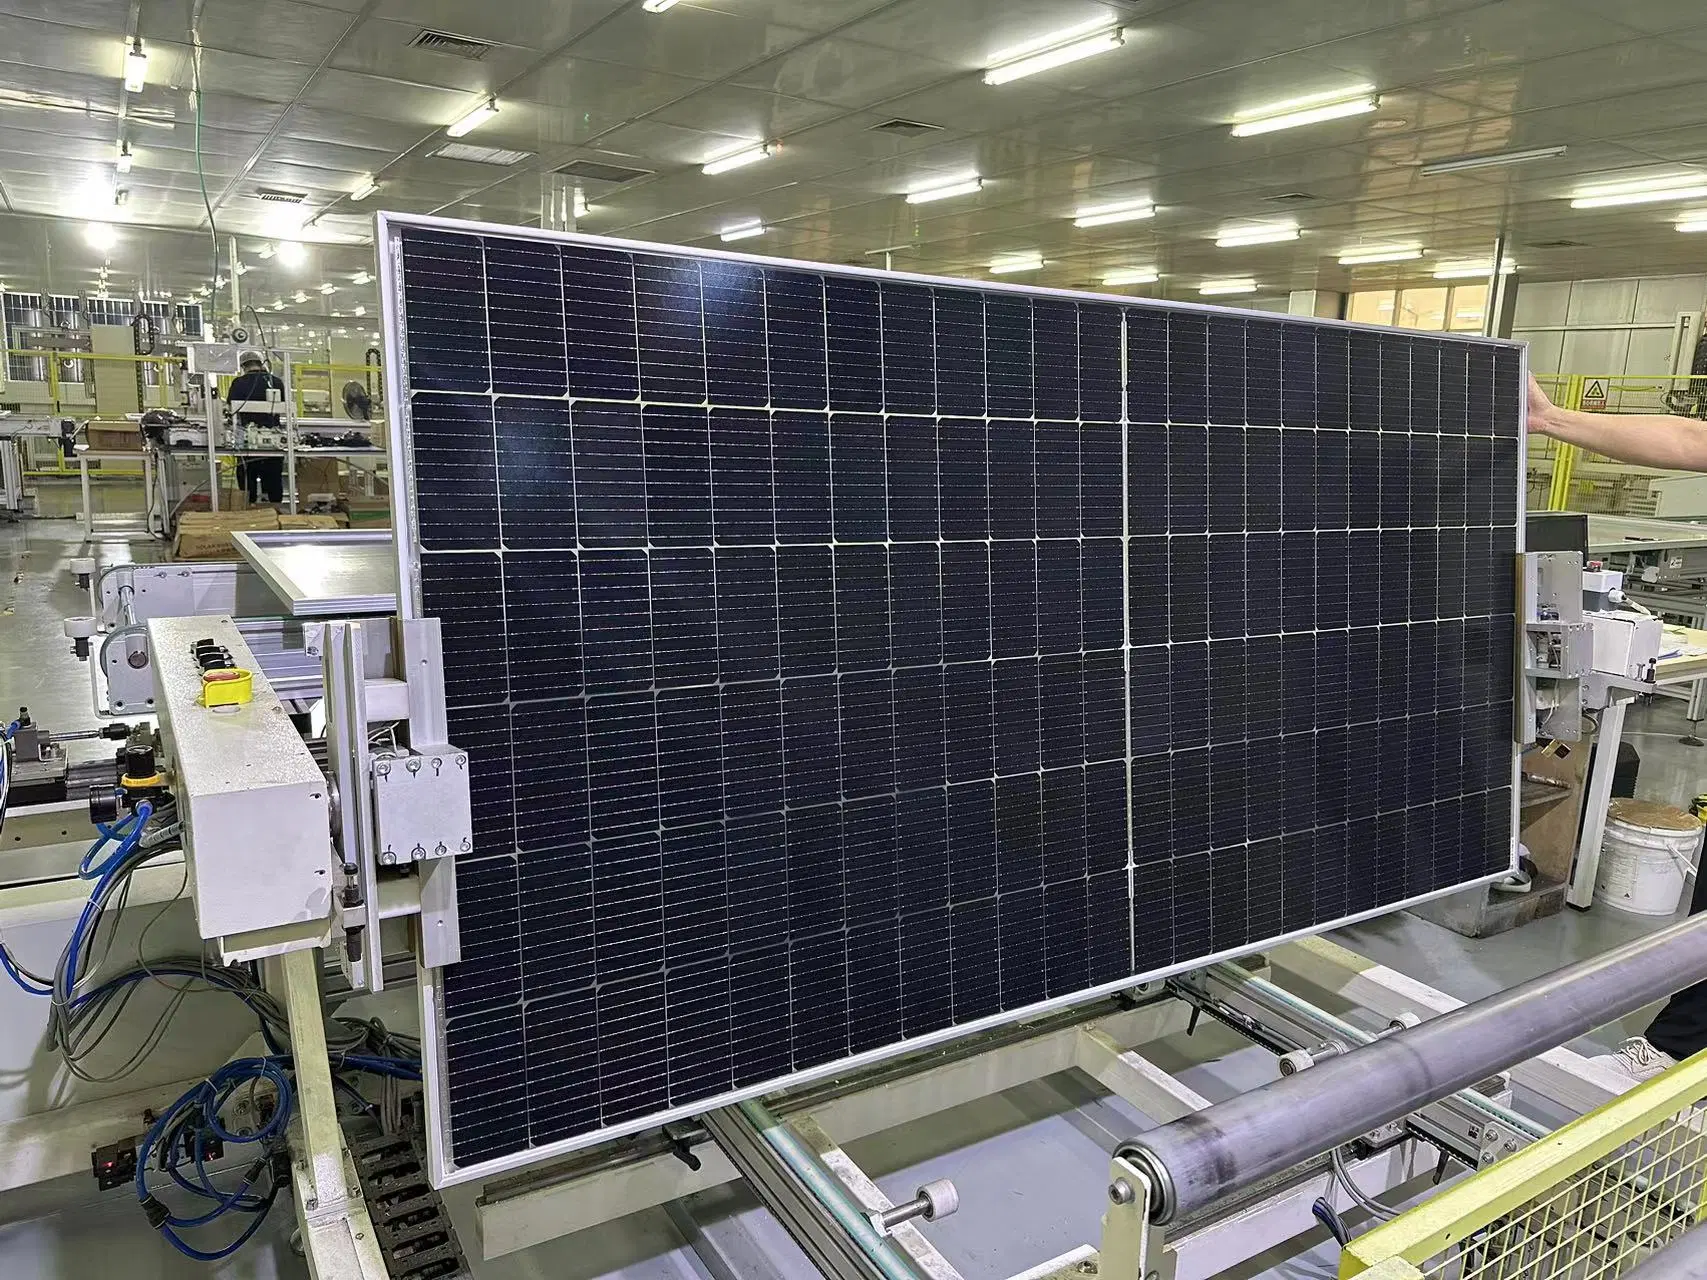 وحدة أحادية المحار عالية القدرة ذات اللوحة الشمسية الشفافة بقدرة 550 واط